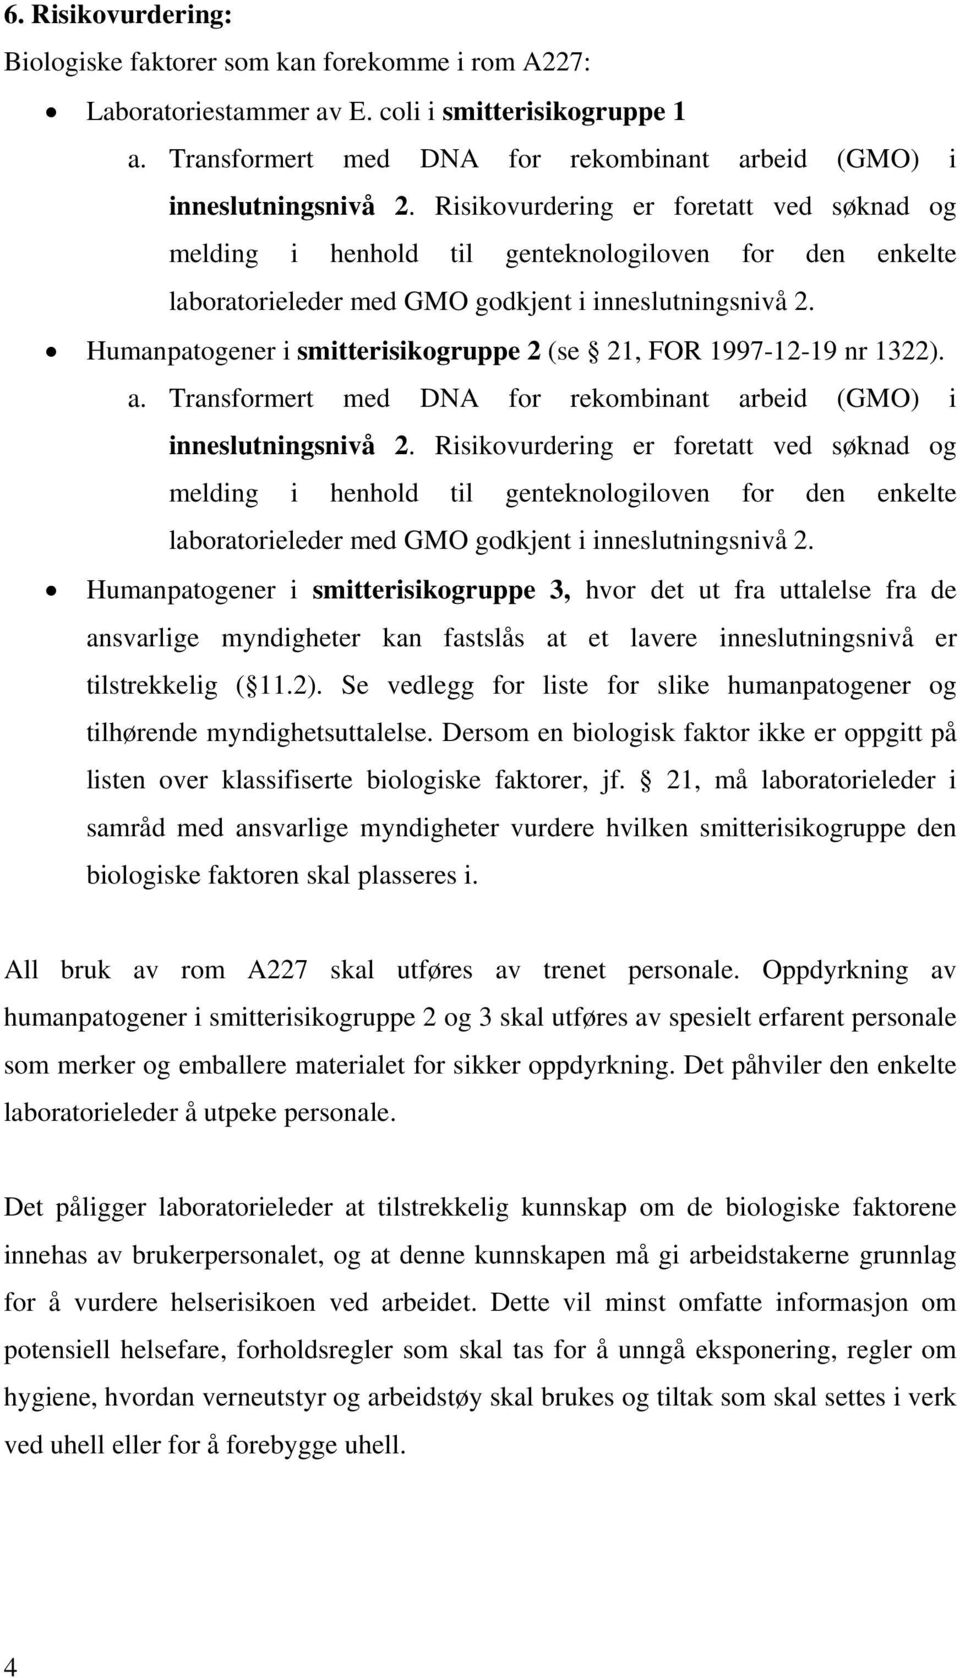 Humanpatogener i smitterisikogruppe 2 (se 21, FOR 1997-12-19 nr 1322). a. Transformert med DNA for rekombinant arbeid (GMO) i inneslutningsnivå 2.